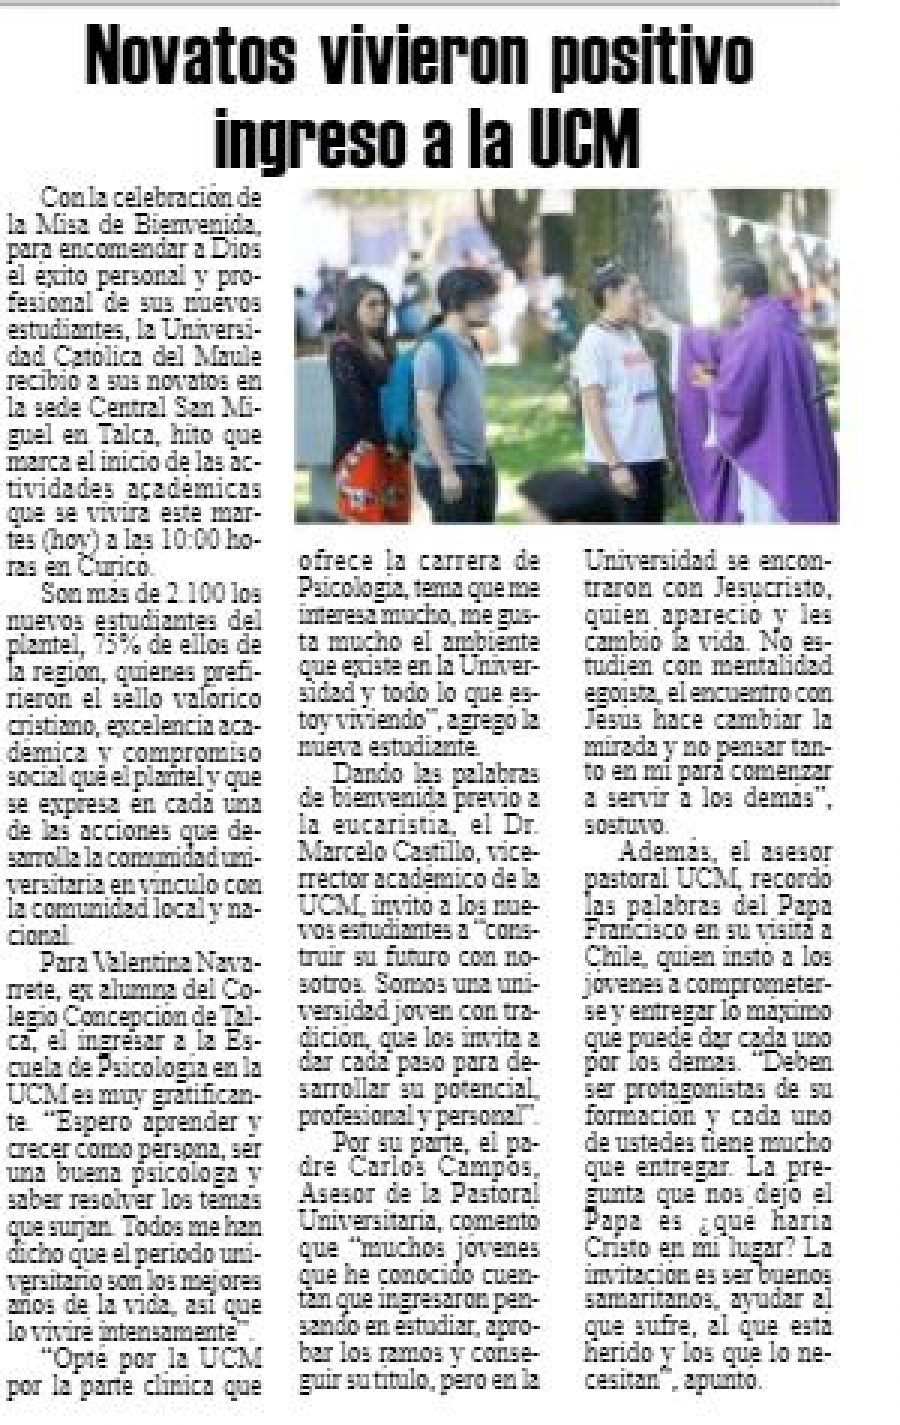 06 de marzo en Diario El Heraldo: “Novatos vivieron positivo ingreso a la UCM”